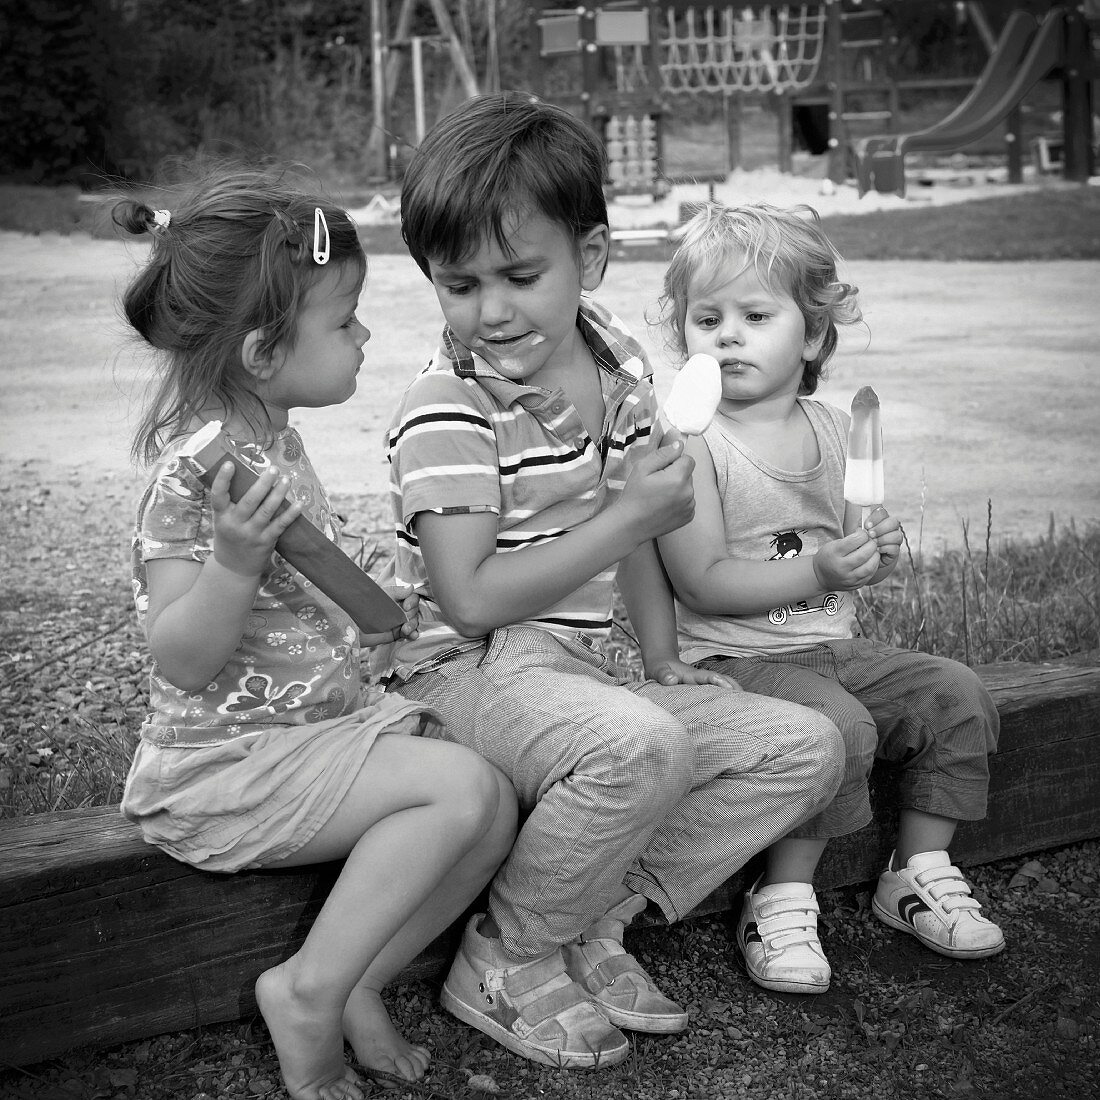 Three children eating ice cream in playground (black and white photo)